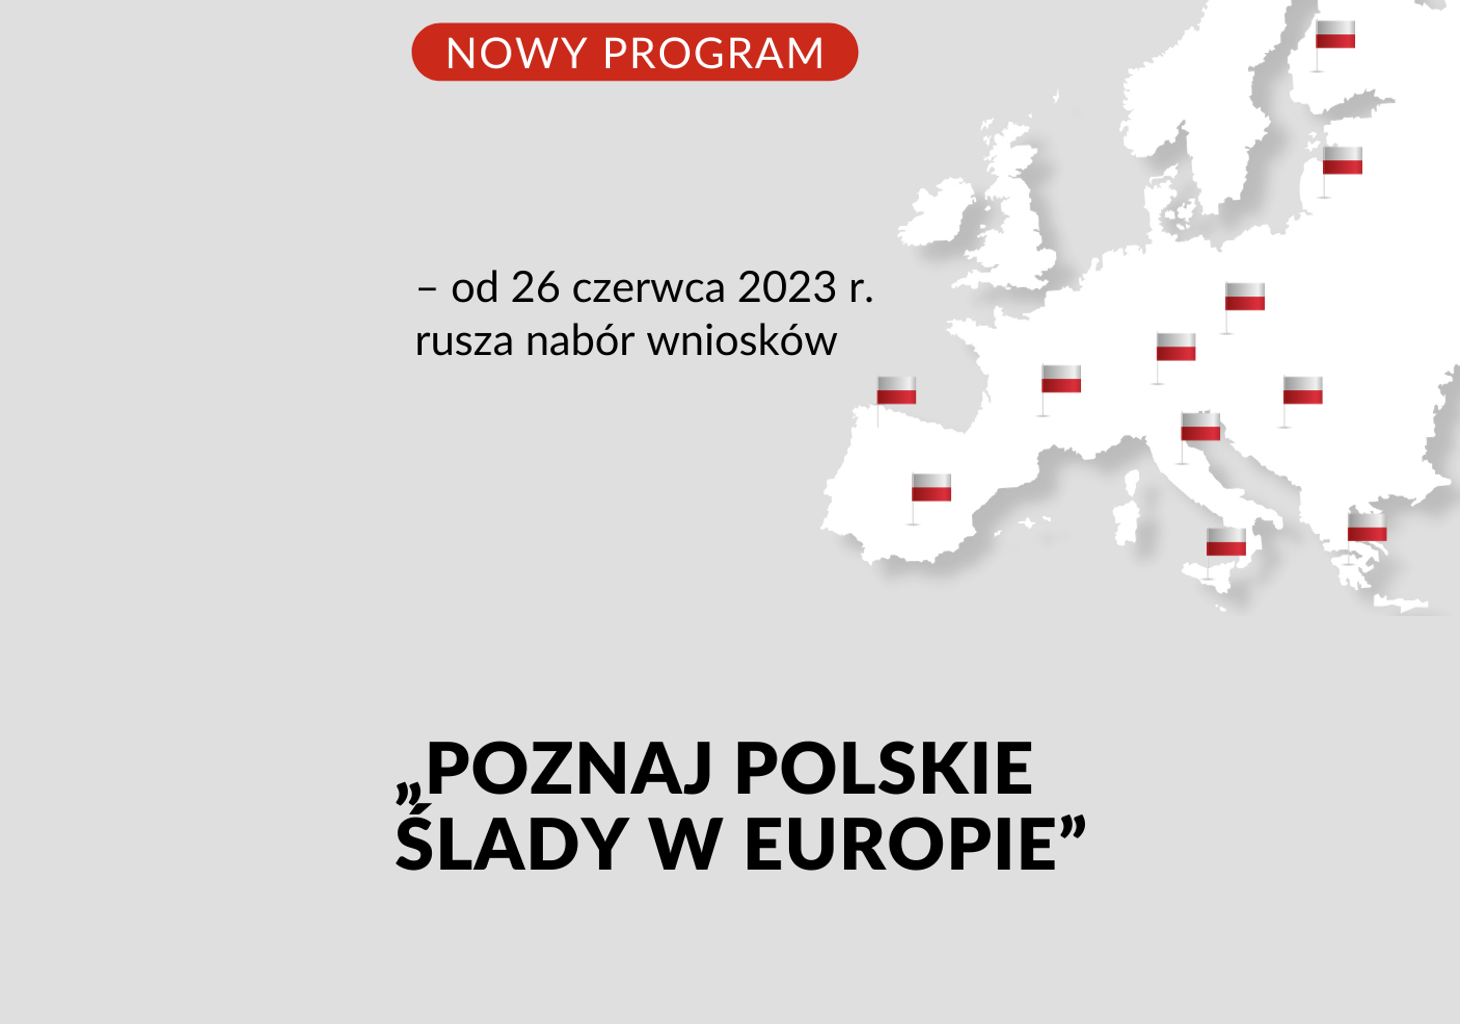 Kontur Europy z miejscami oznaczonymi polskimi flagami.